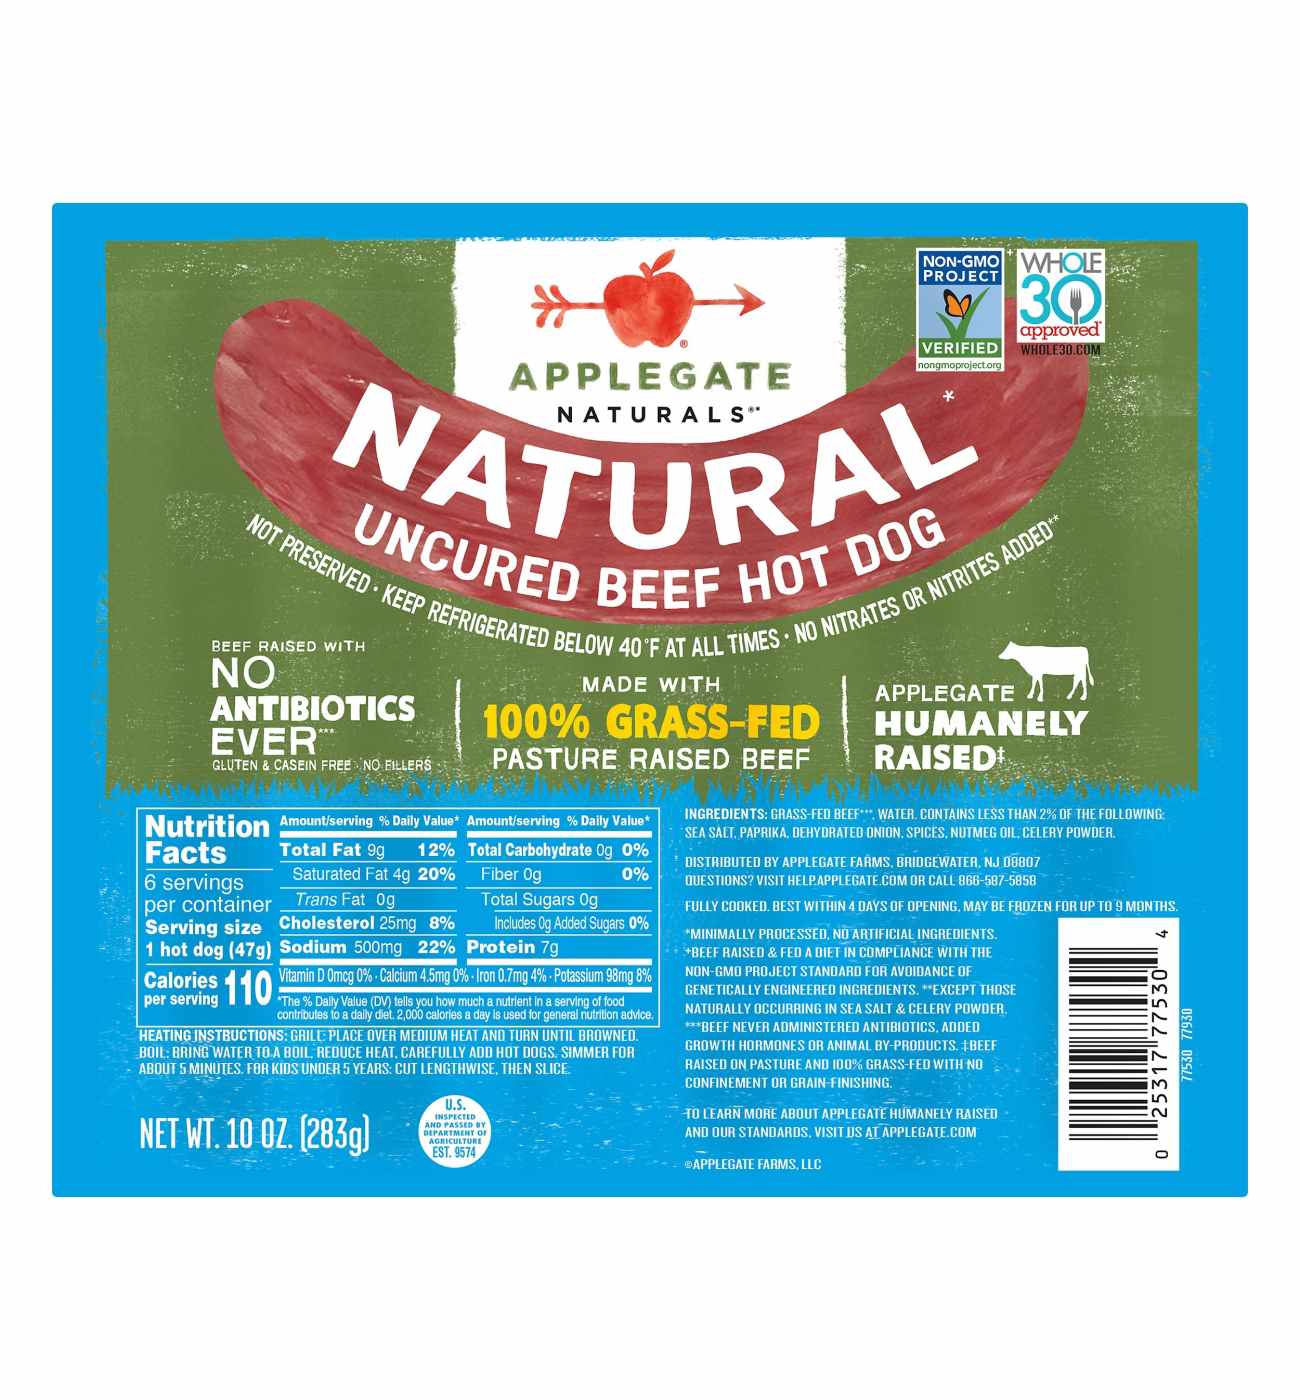 Applegate Naturals Uncured Beef Hot Dog; image 1 of 5